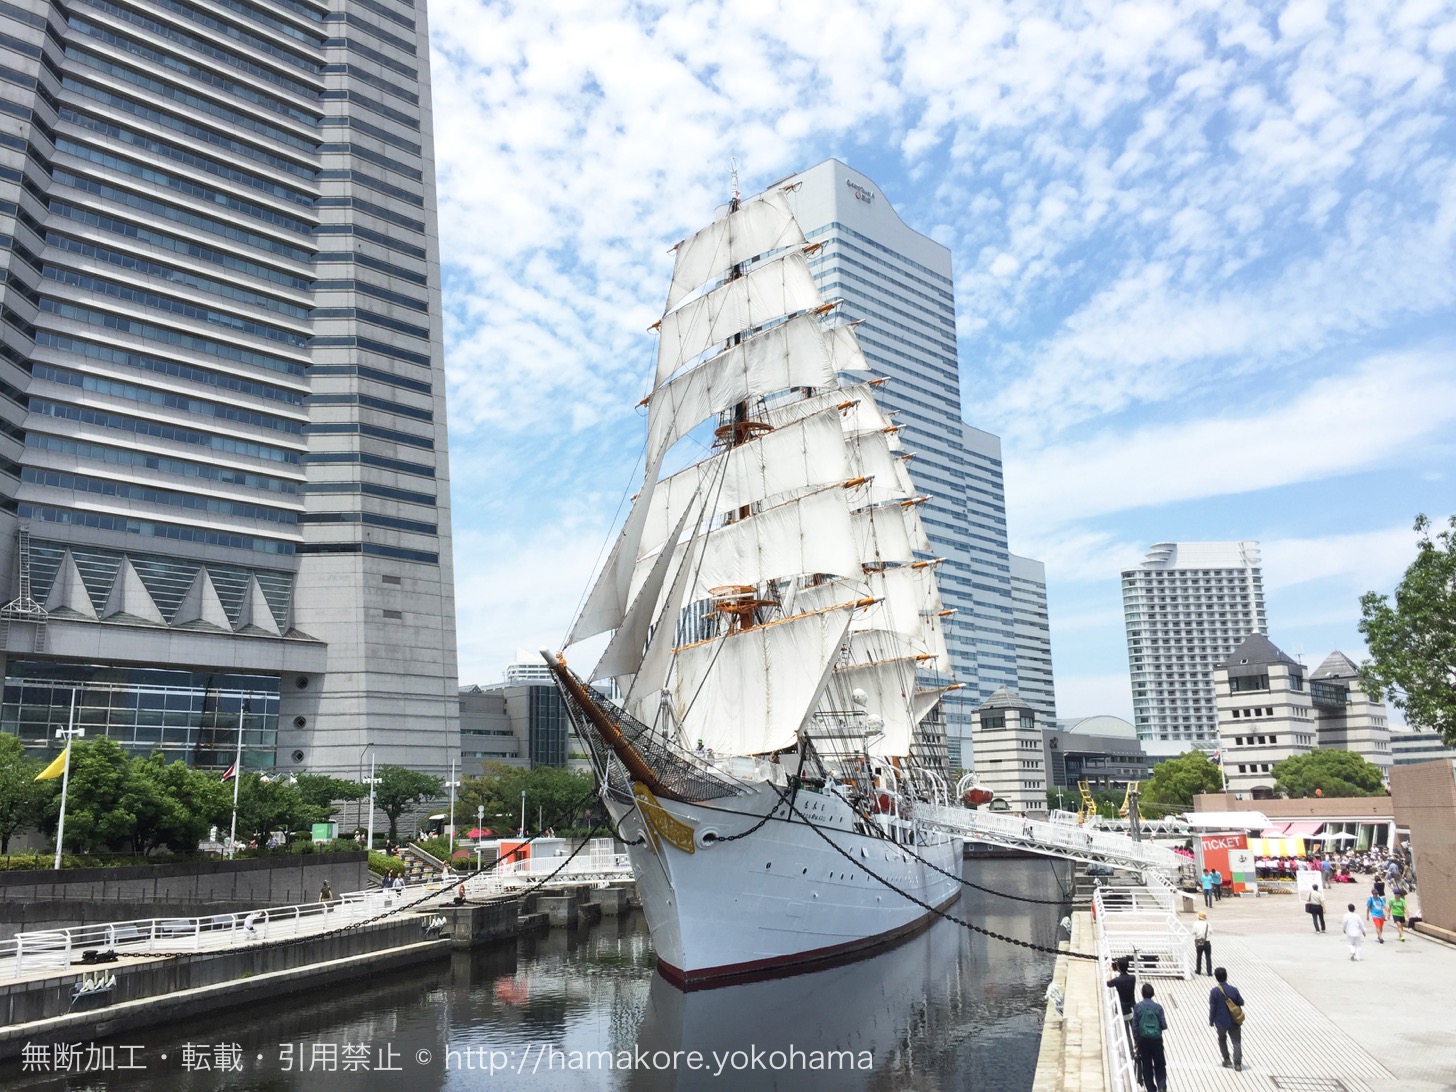 帆船日本丸「総帆展帆」を9月23日に開催！2018年開催はあと2回